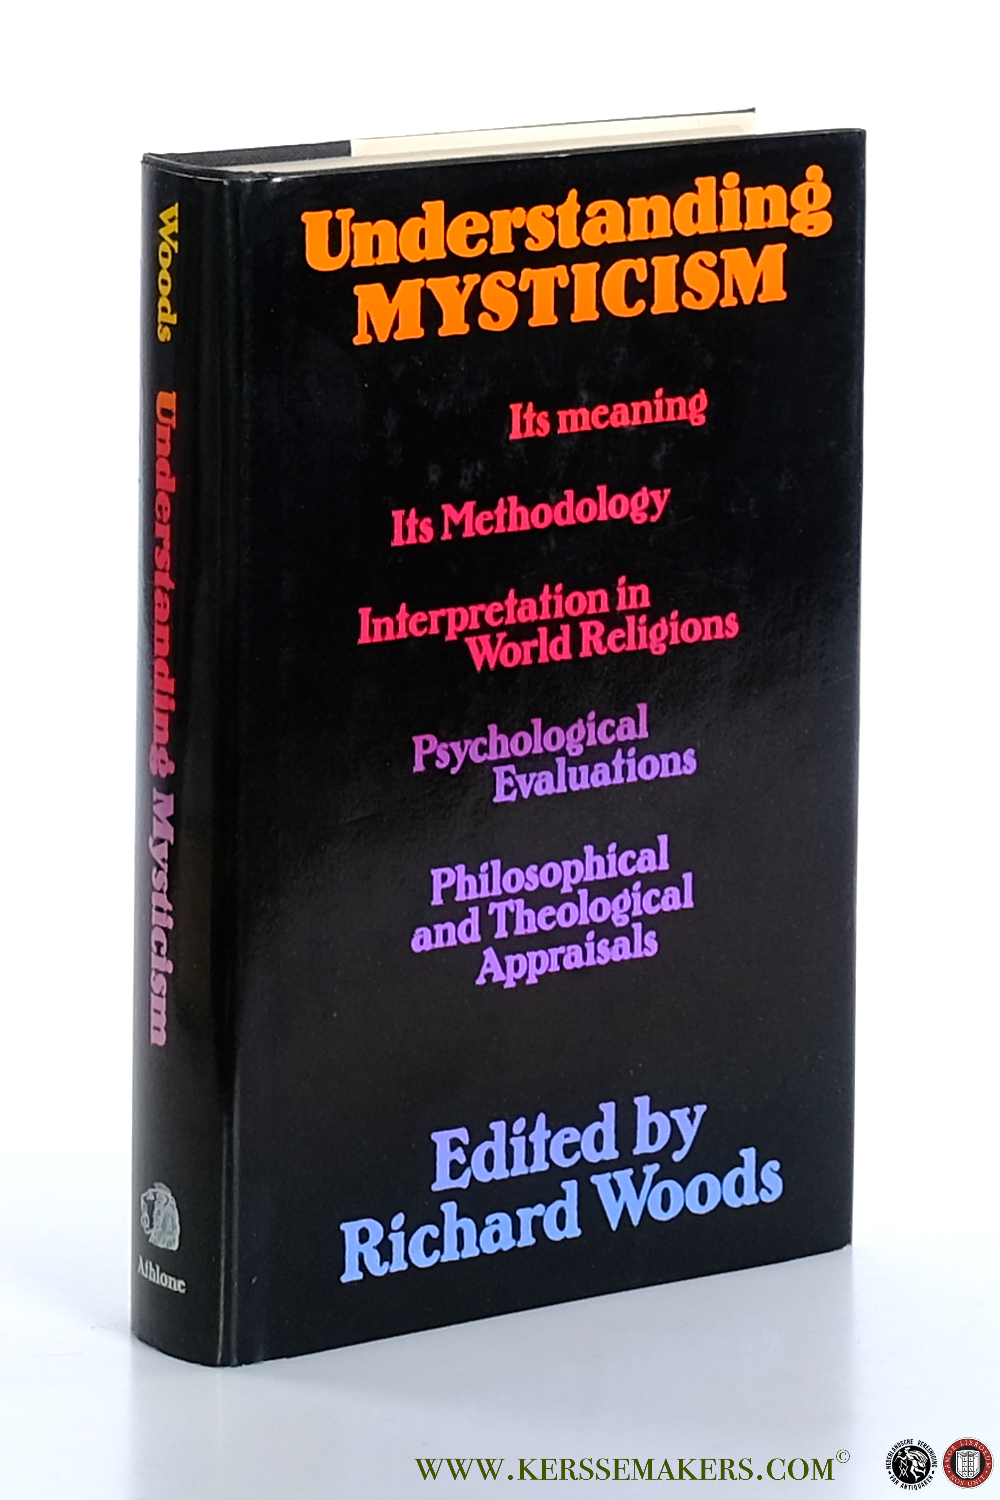 Understanding mysticism. - Woods, Richard (ed.).